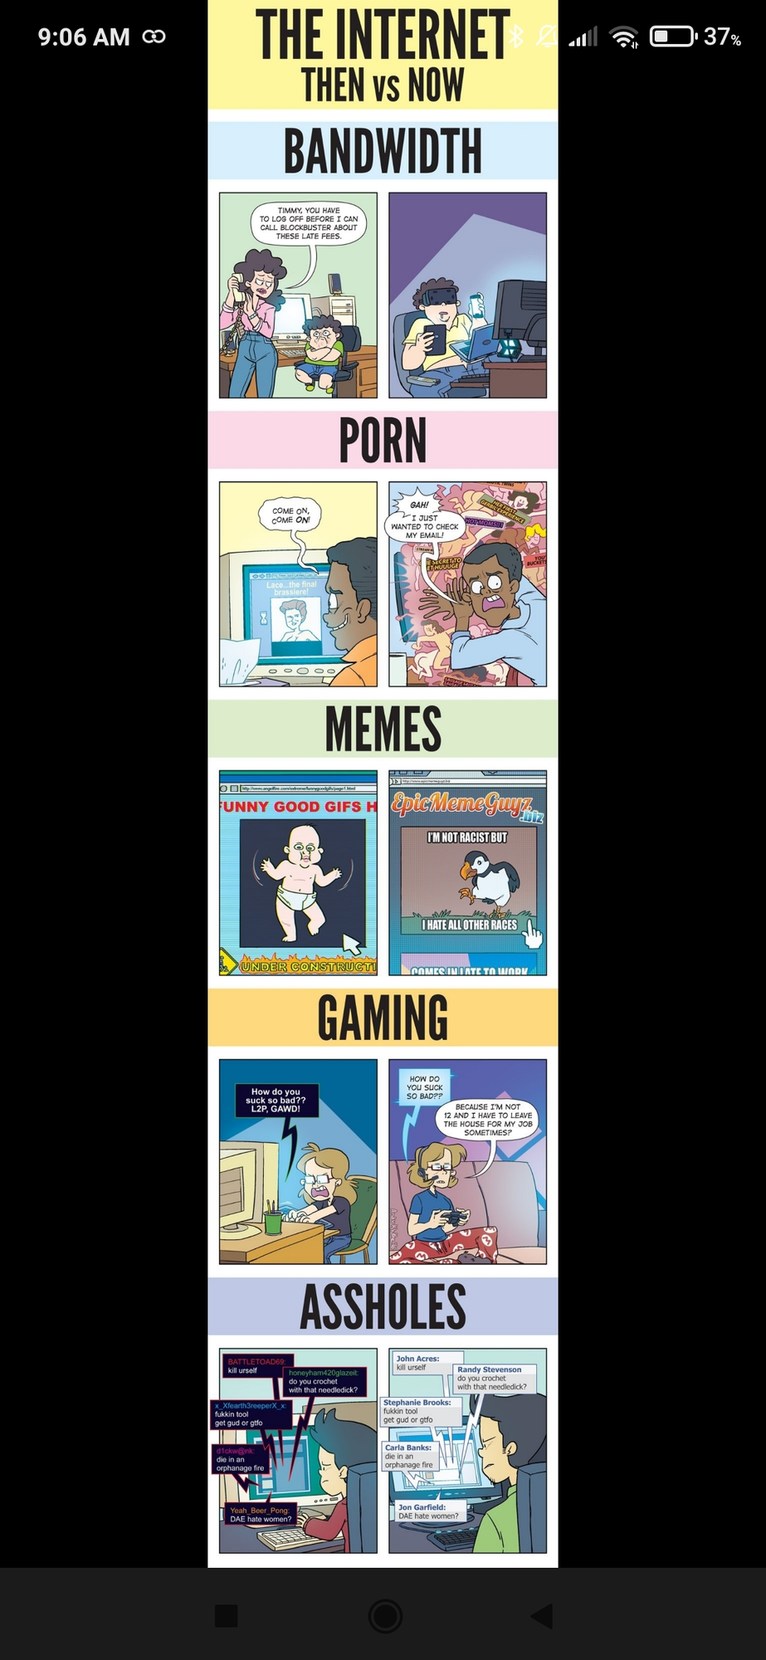 Then vs now - meme